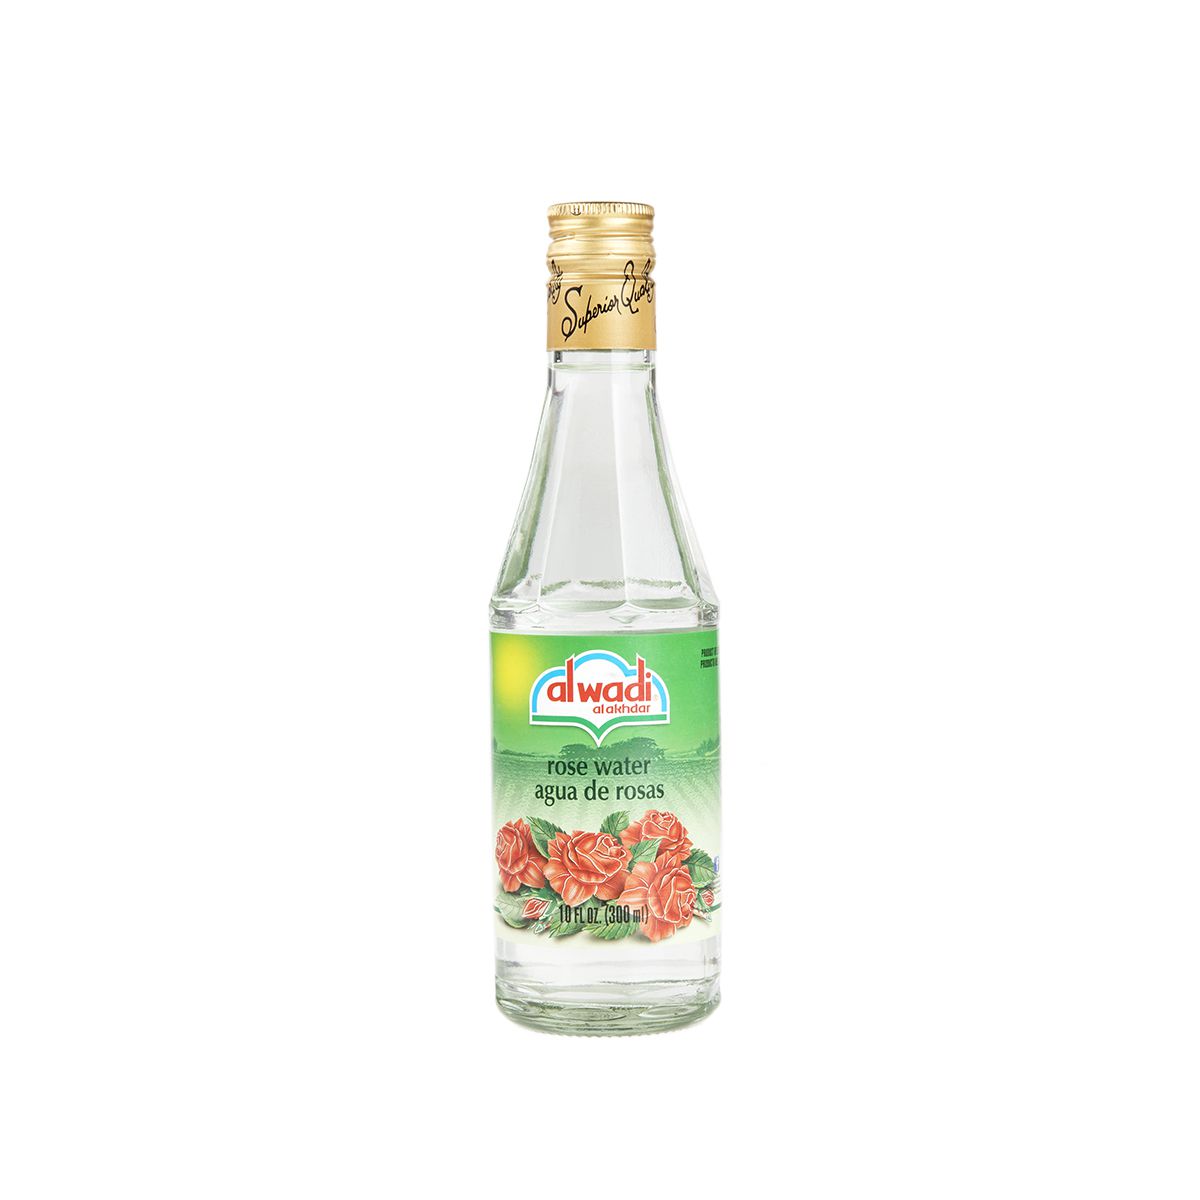 Alwadi Rose Water 8 oz Bottle